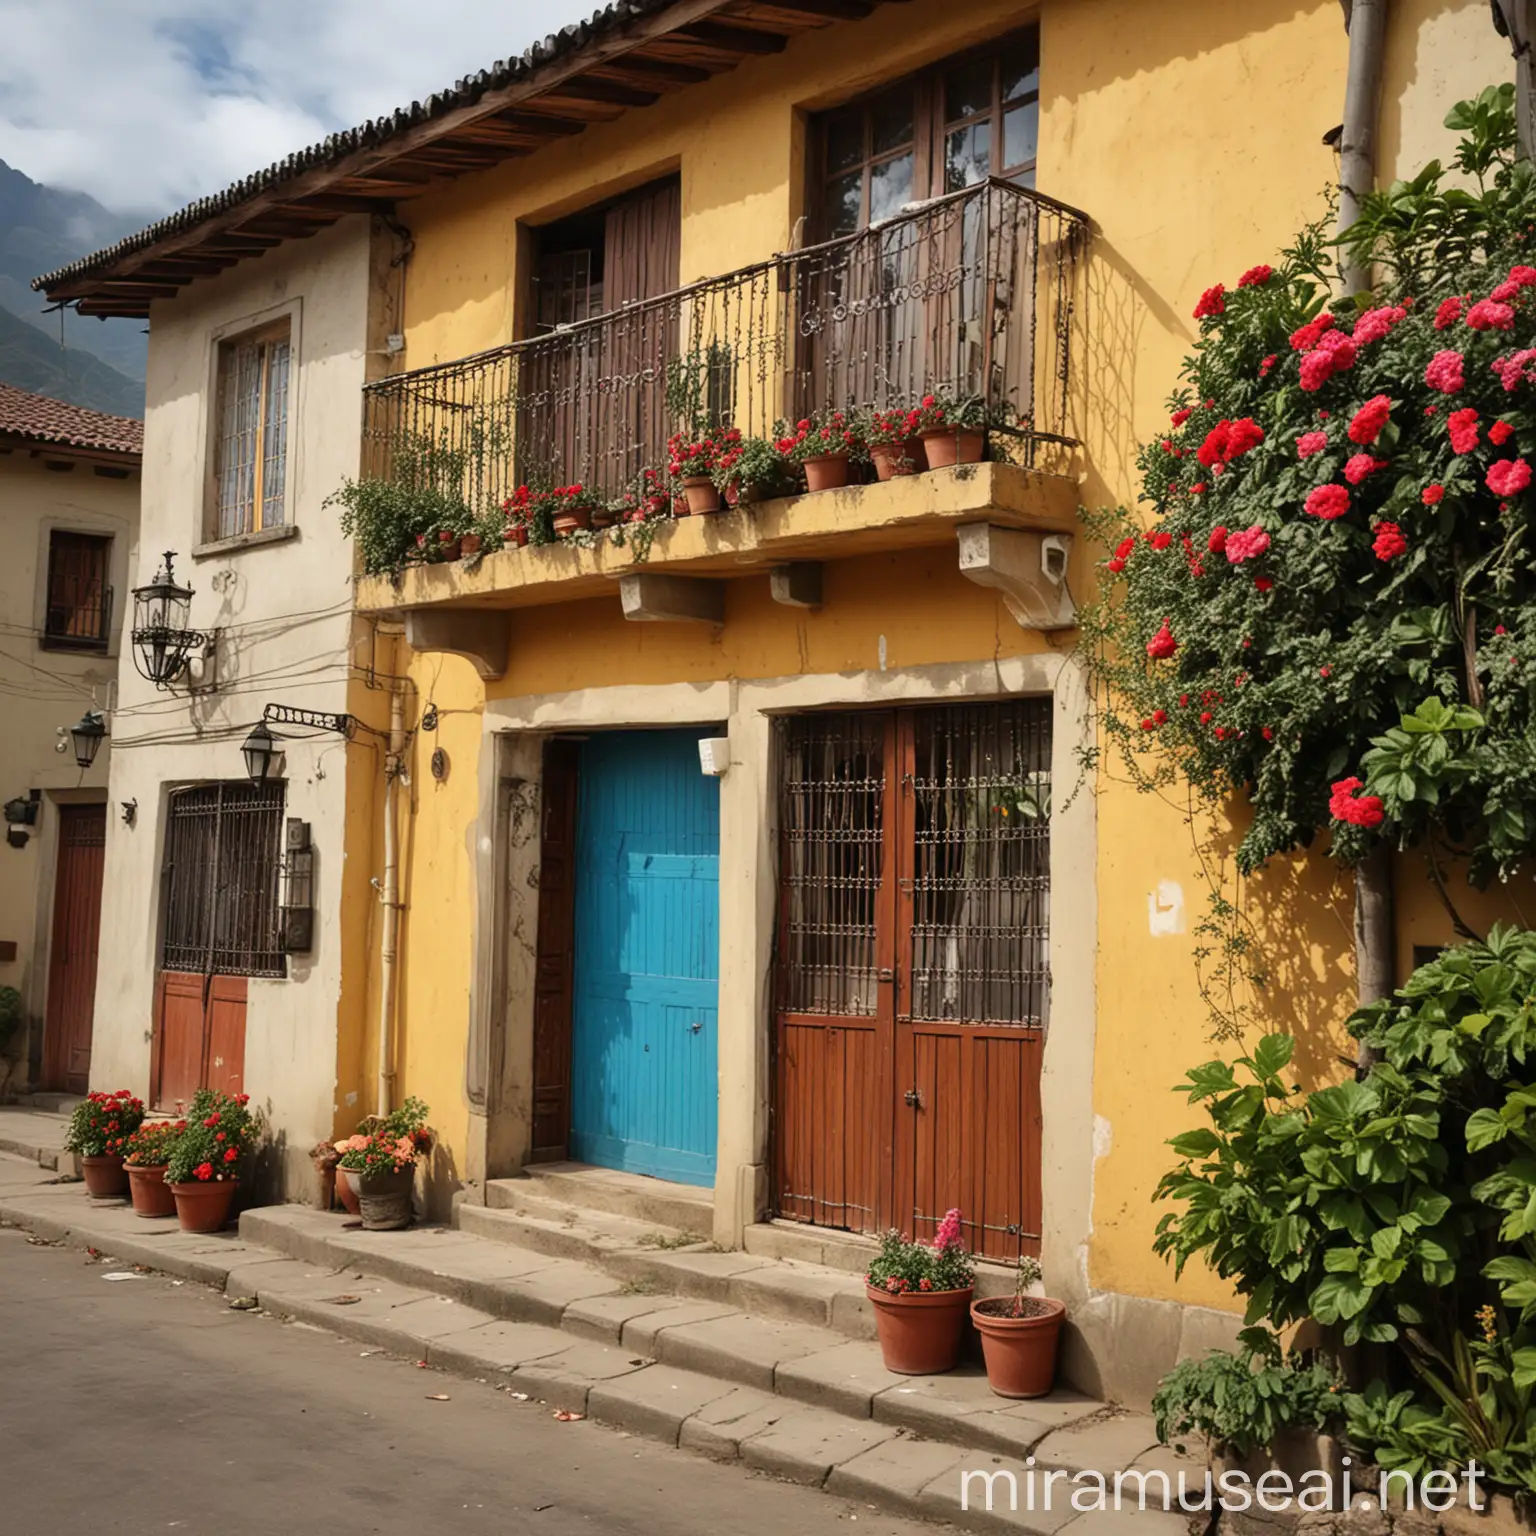 Quiero una casa de clase social pobre peruana, pero pintoresca.